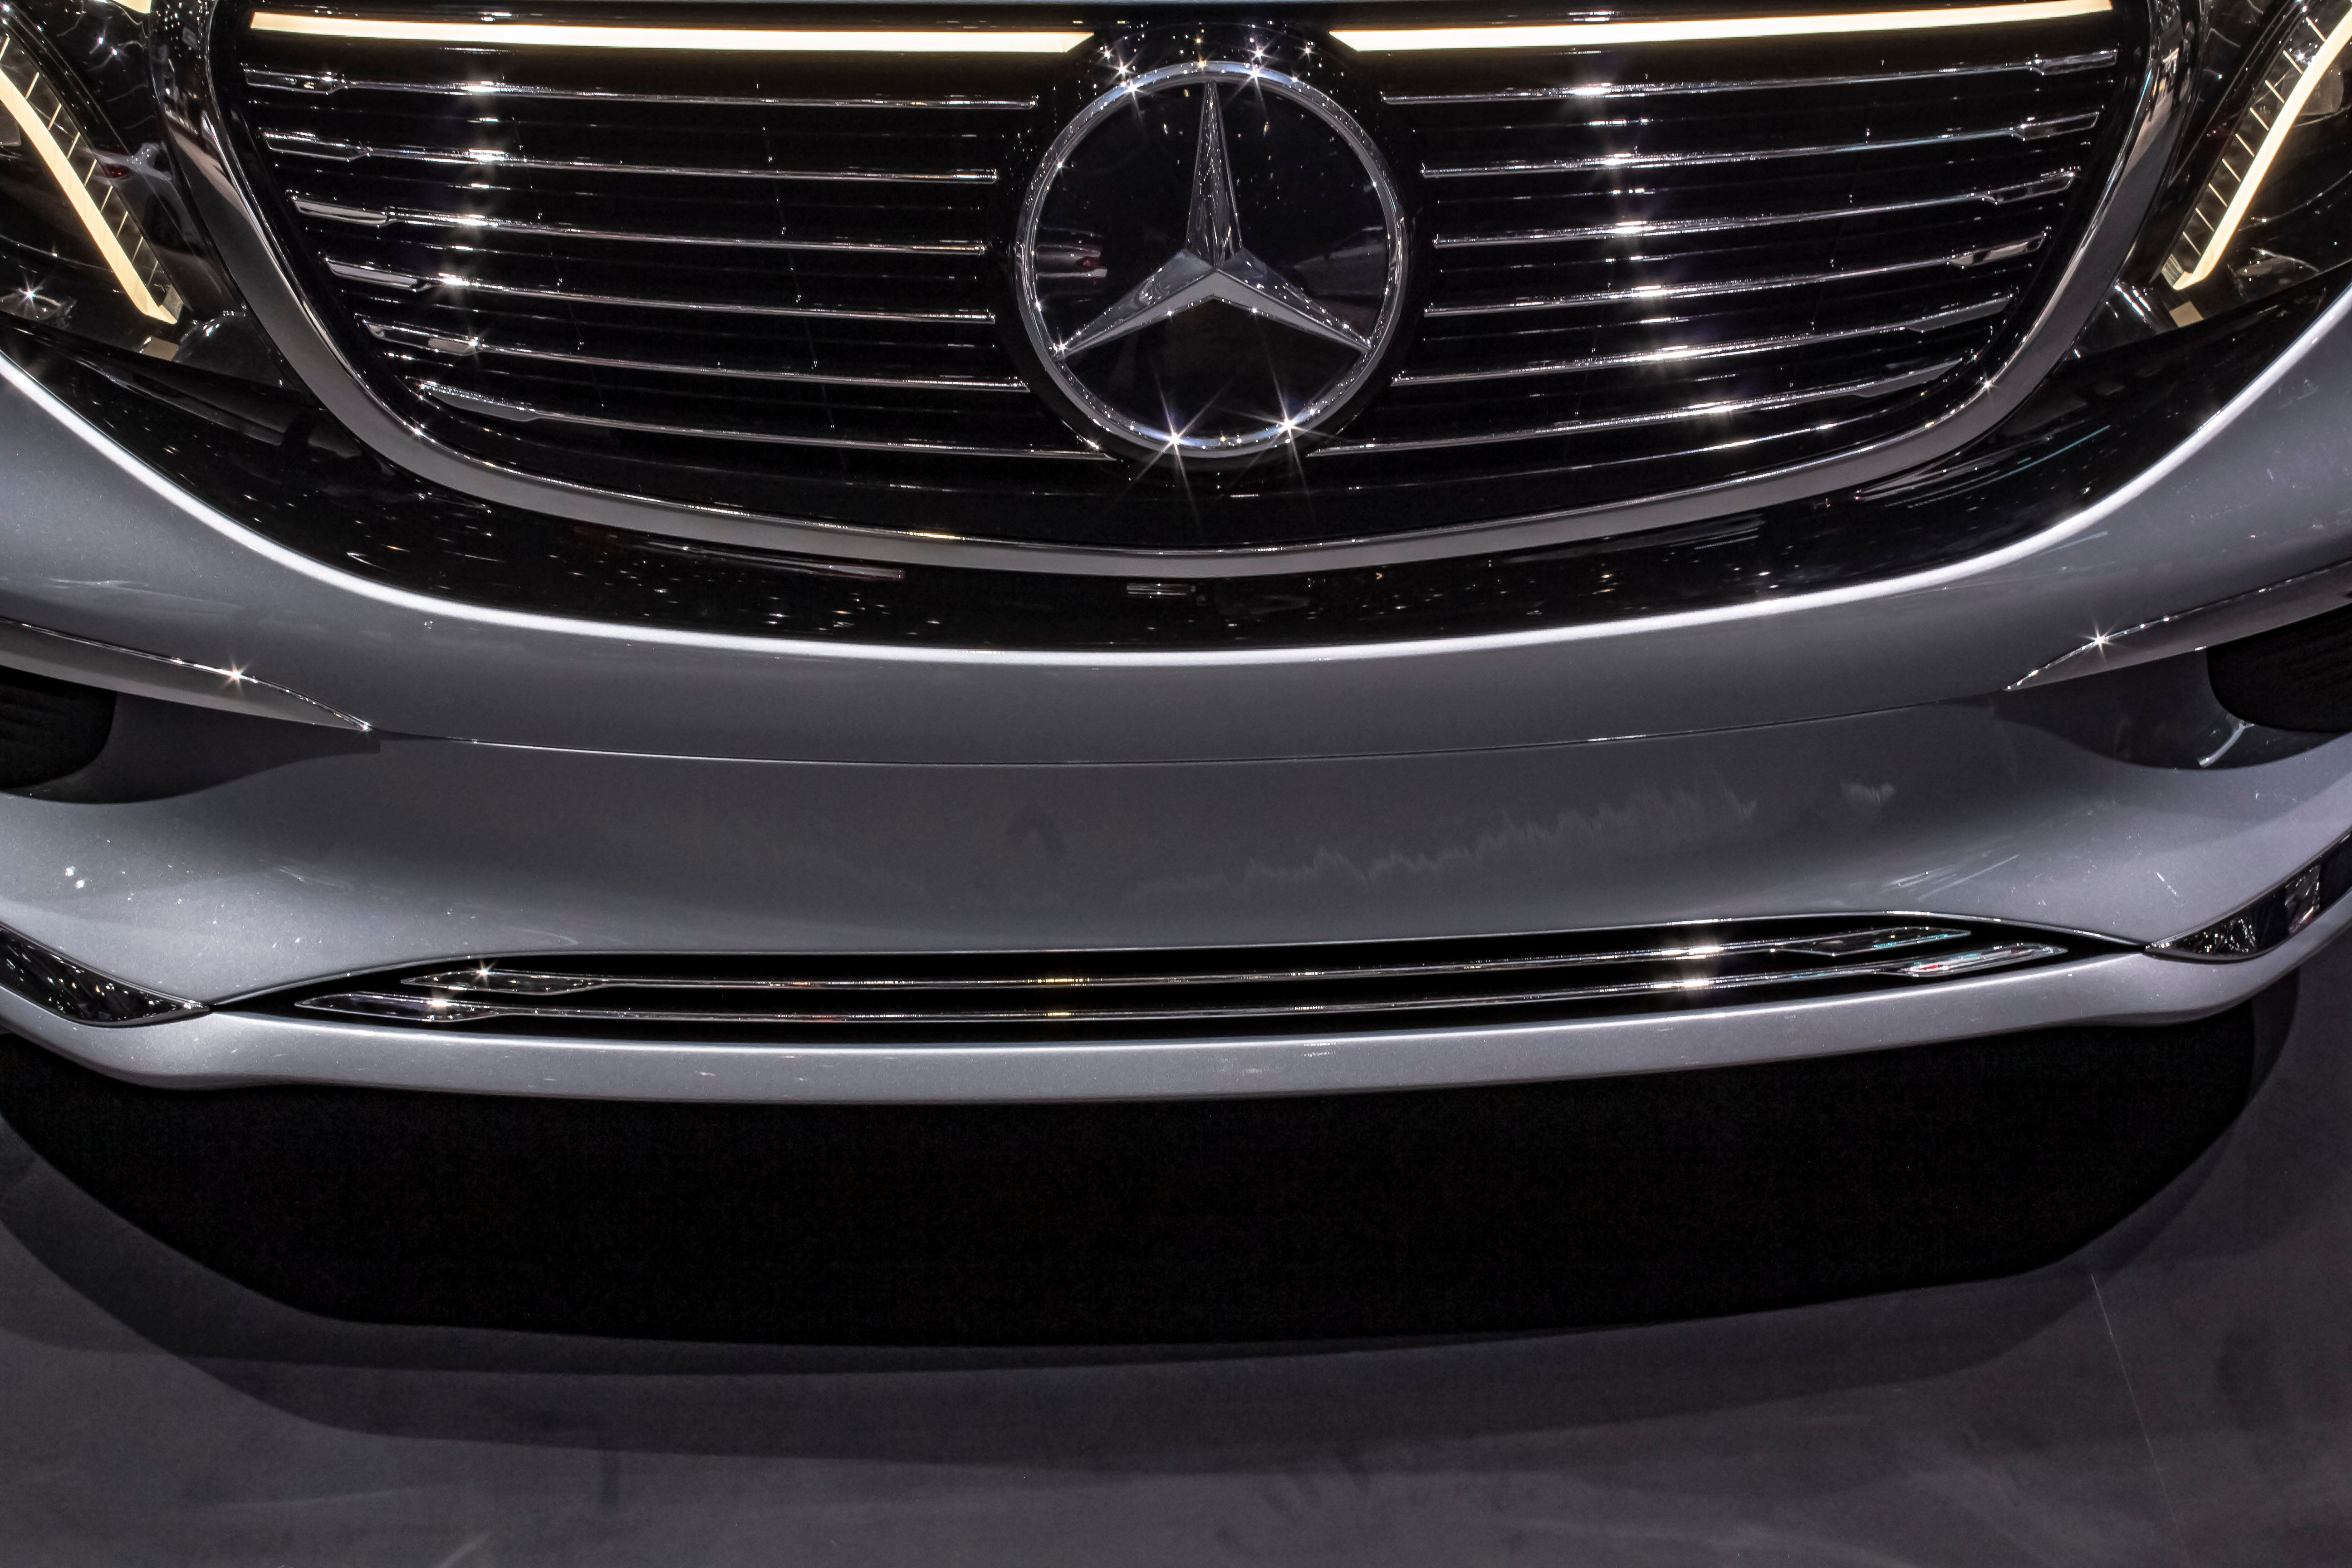 2019 Mercedes-Benz Concept EQV